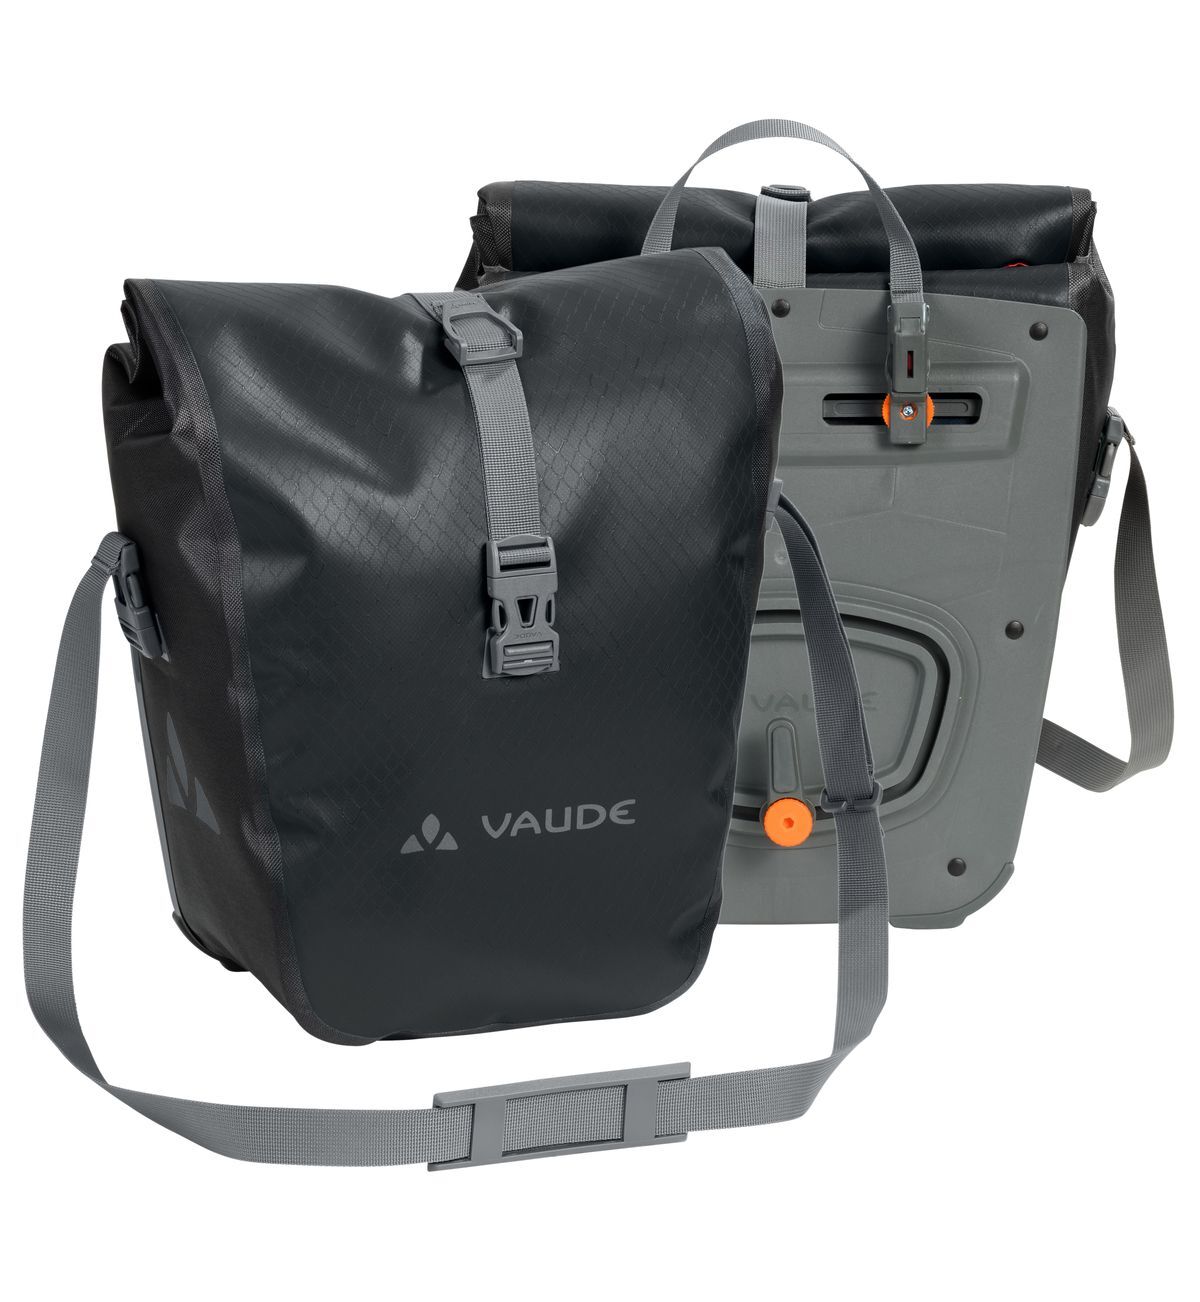 Vaude - Aqua Front - Cycling bag